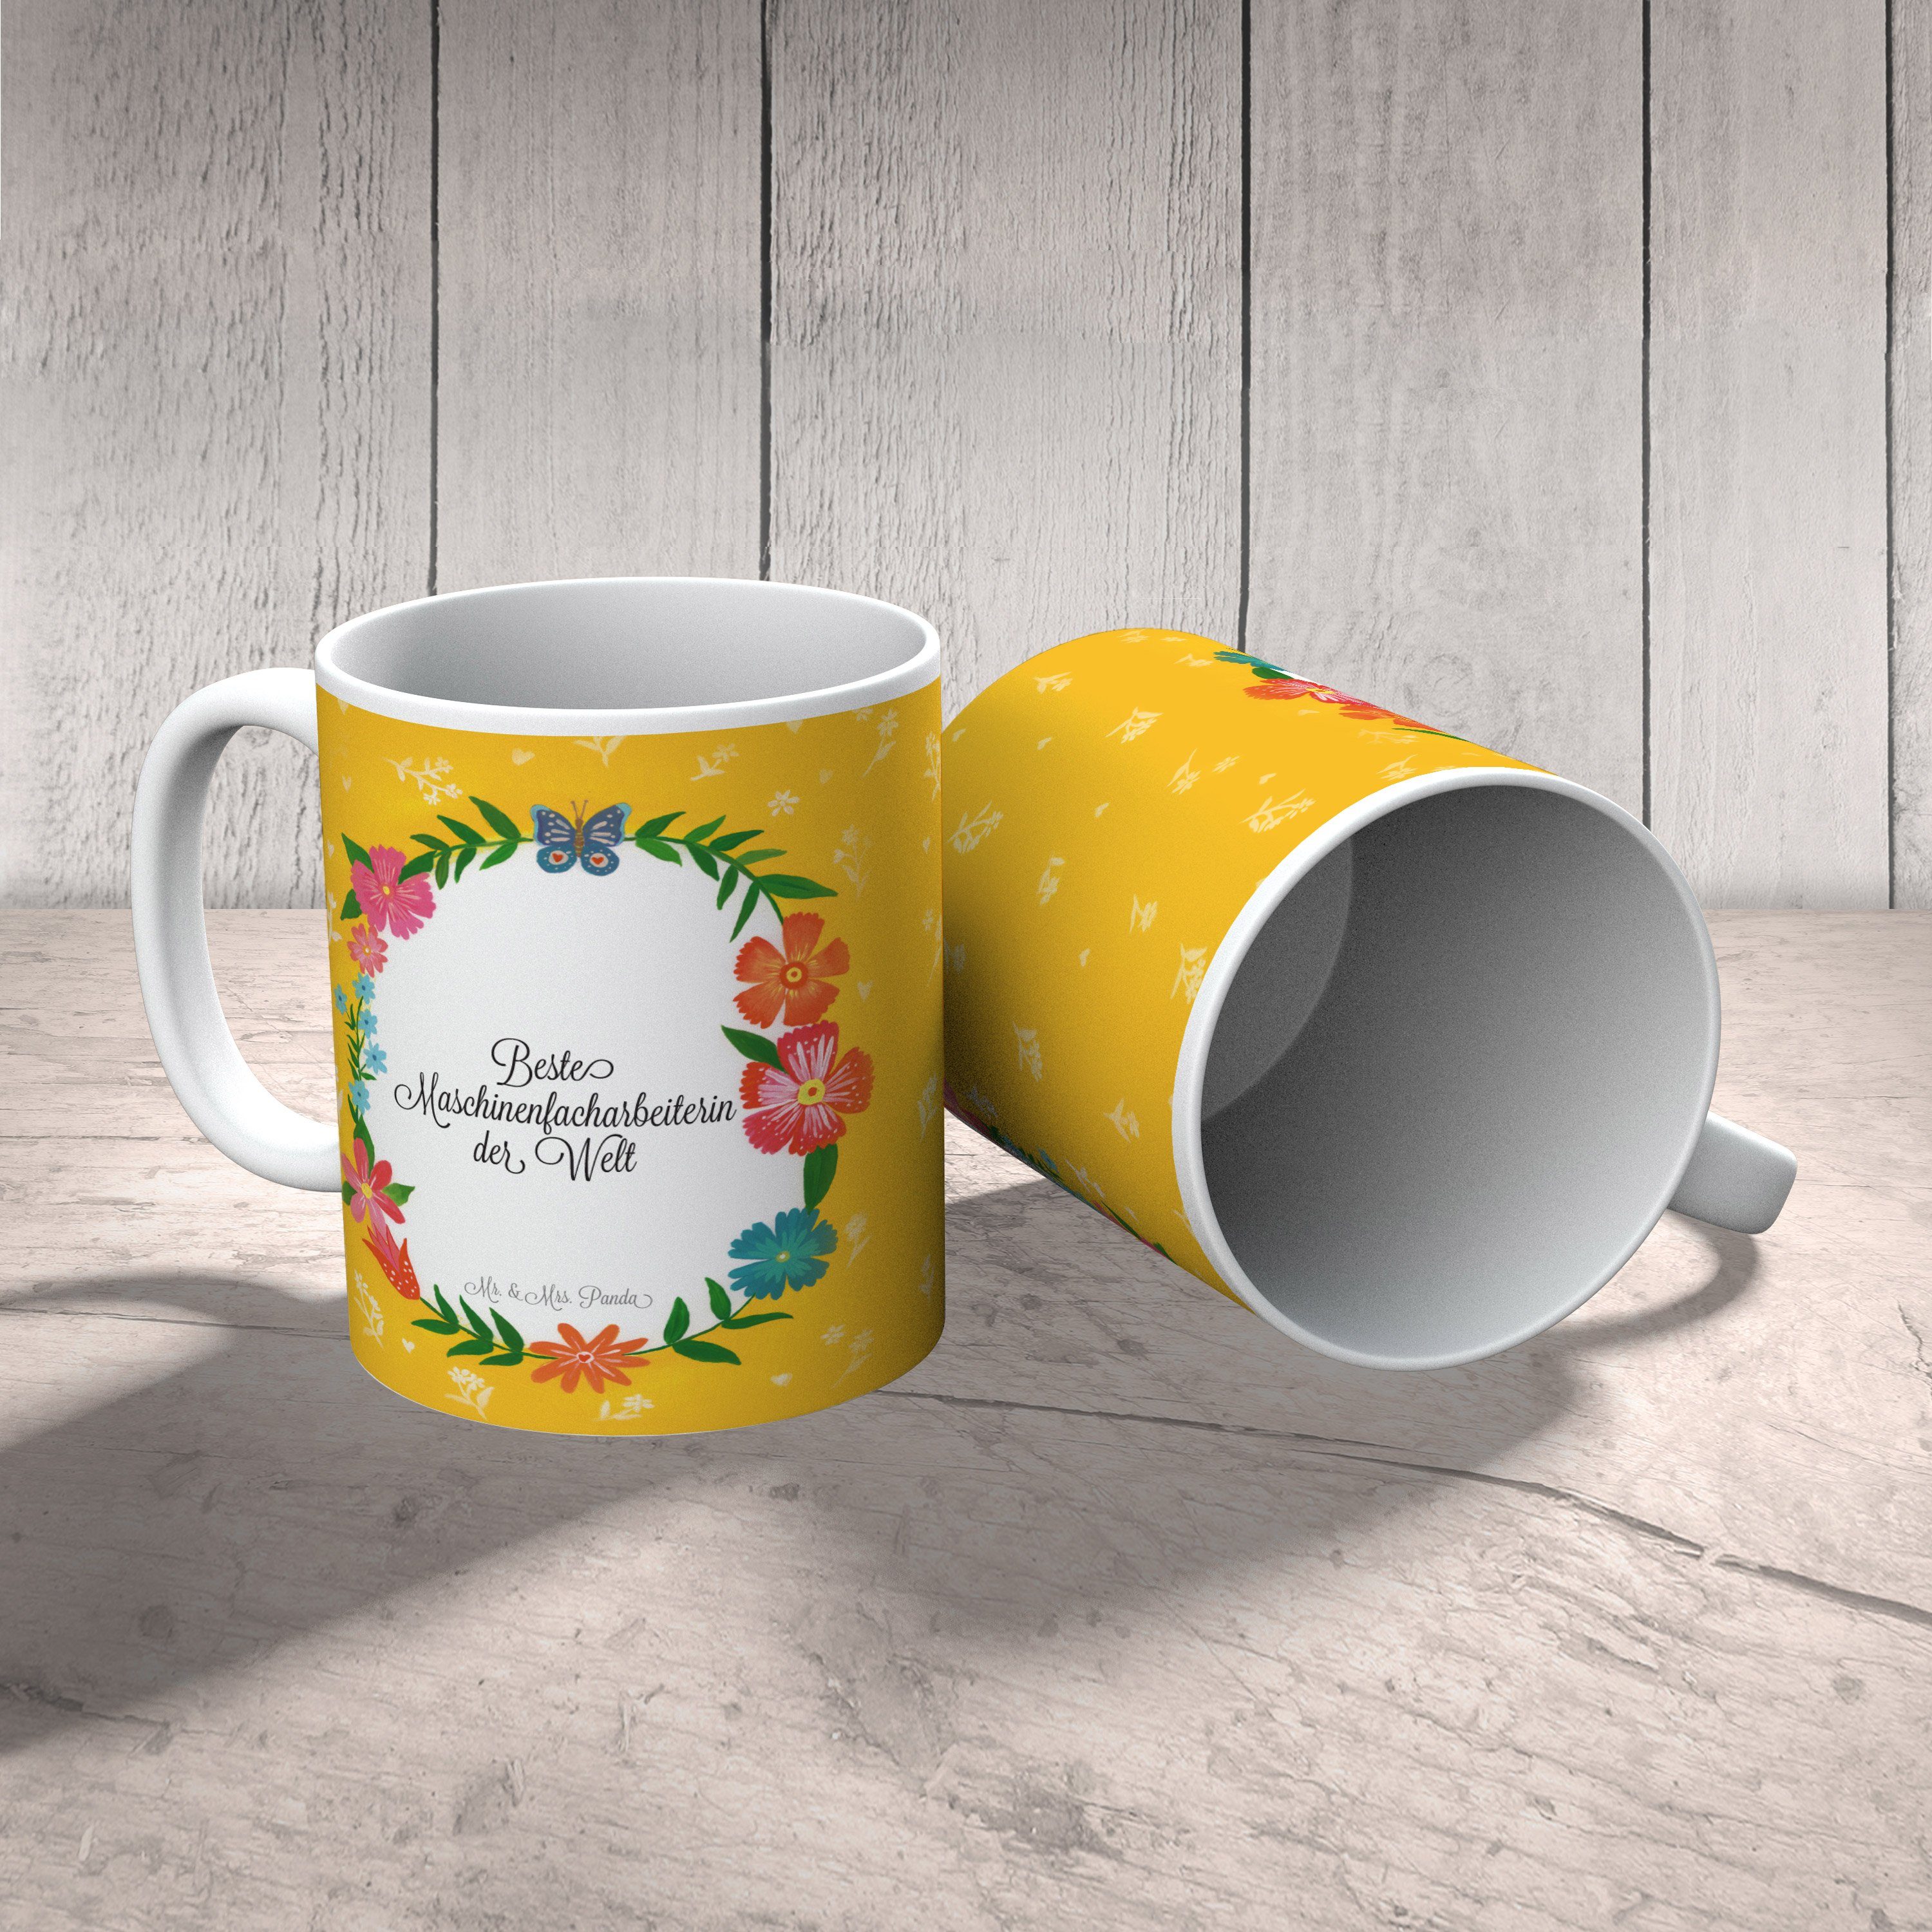 Mr. & Mrs. Panda Motive, - Maschinenfacharbeiterin Tasse Tasse Rente, Kaffeebecher, Geschenk, Keramik